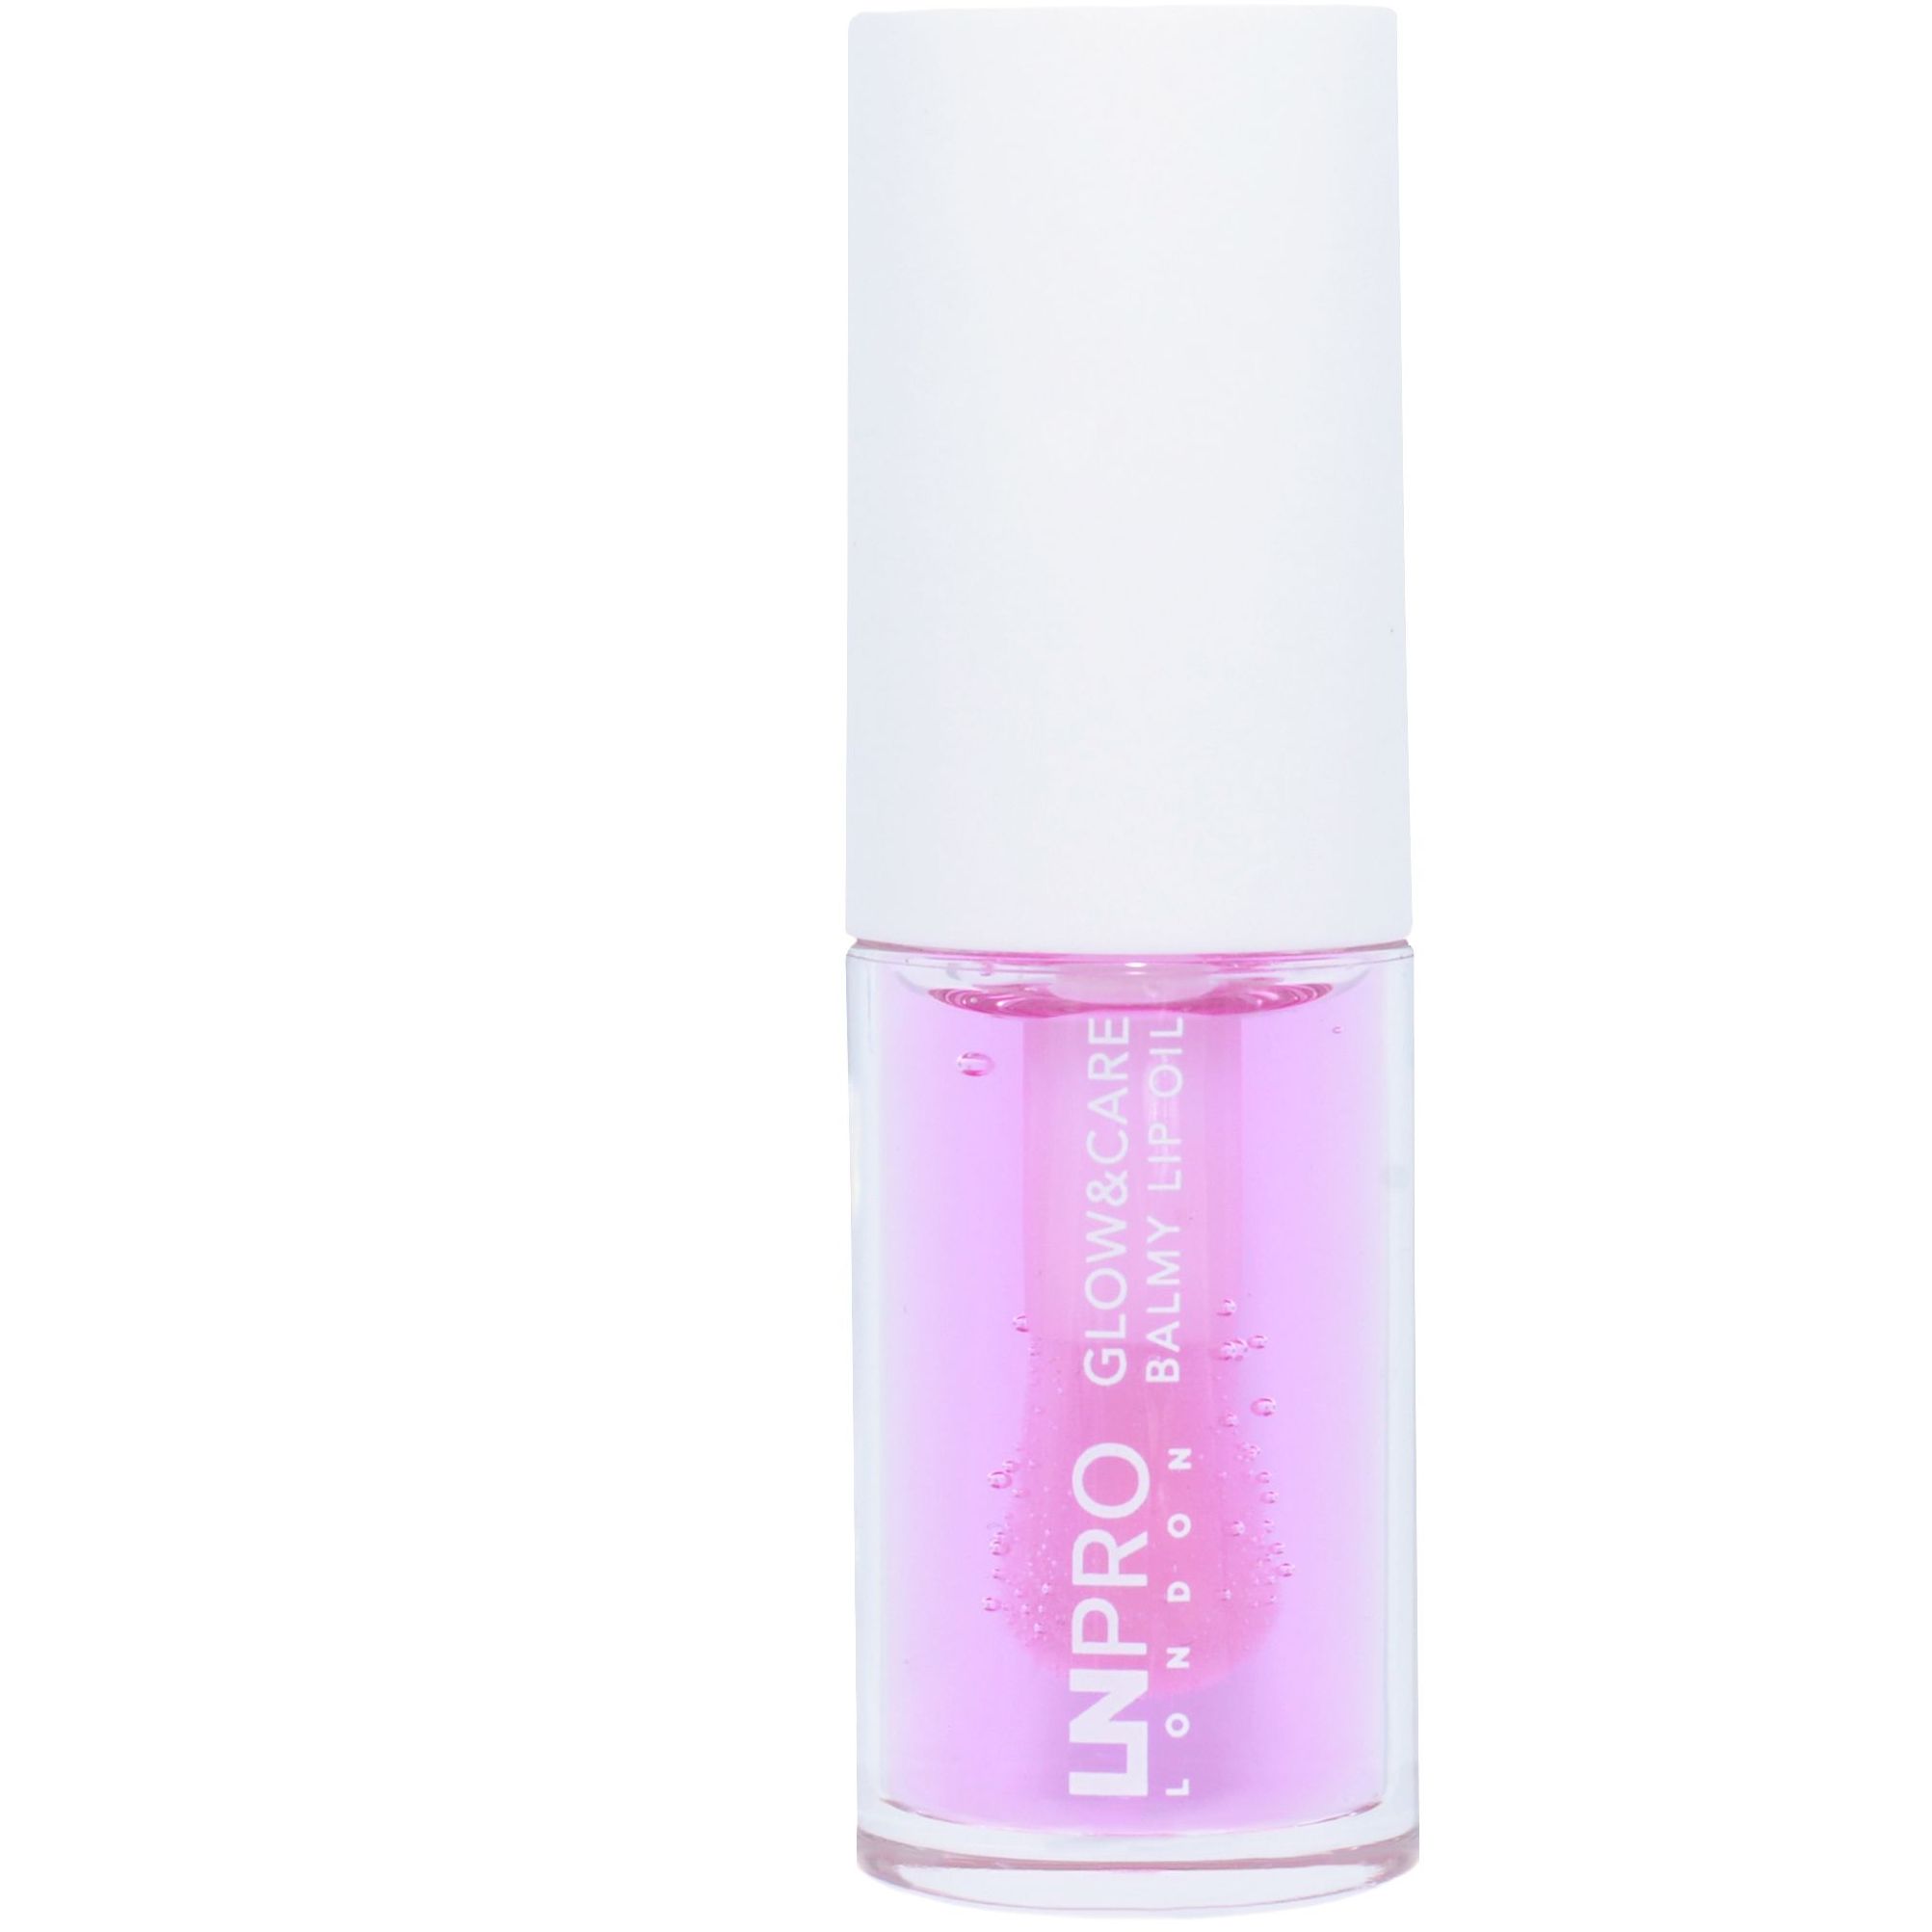 Олія-бальзам для губ LN Pro Glow & Care Balmy Lip Oil відтінок 104, 3.7 мл - фото 5